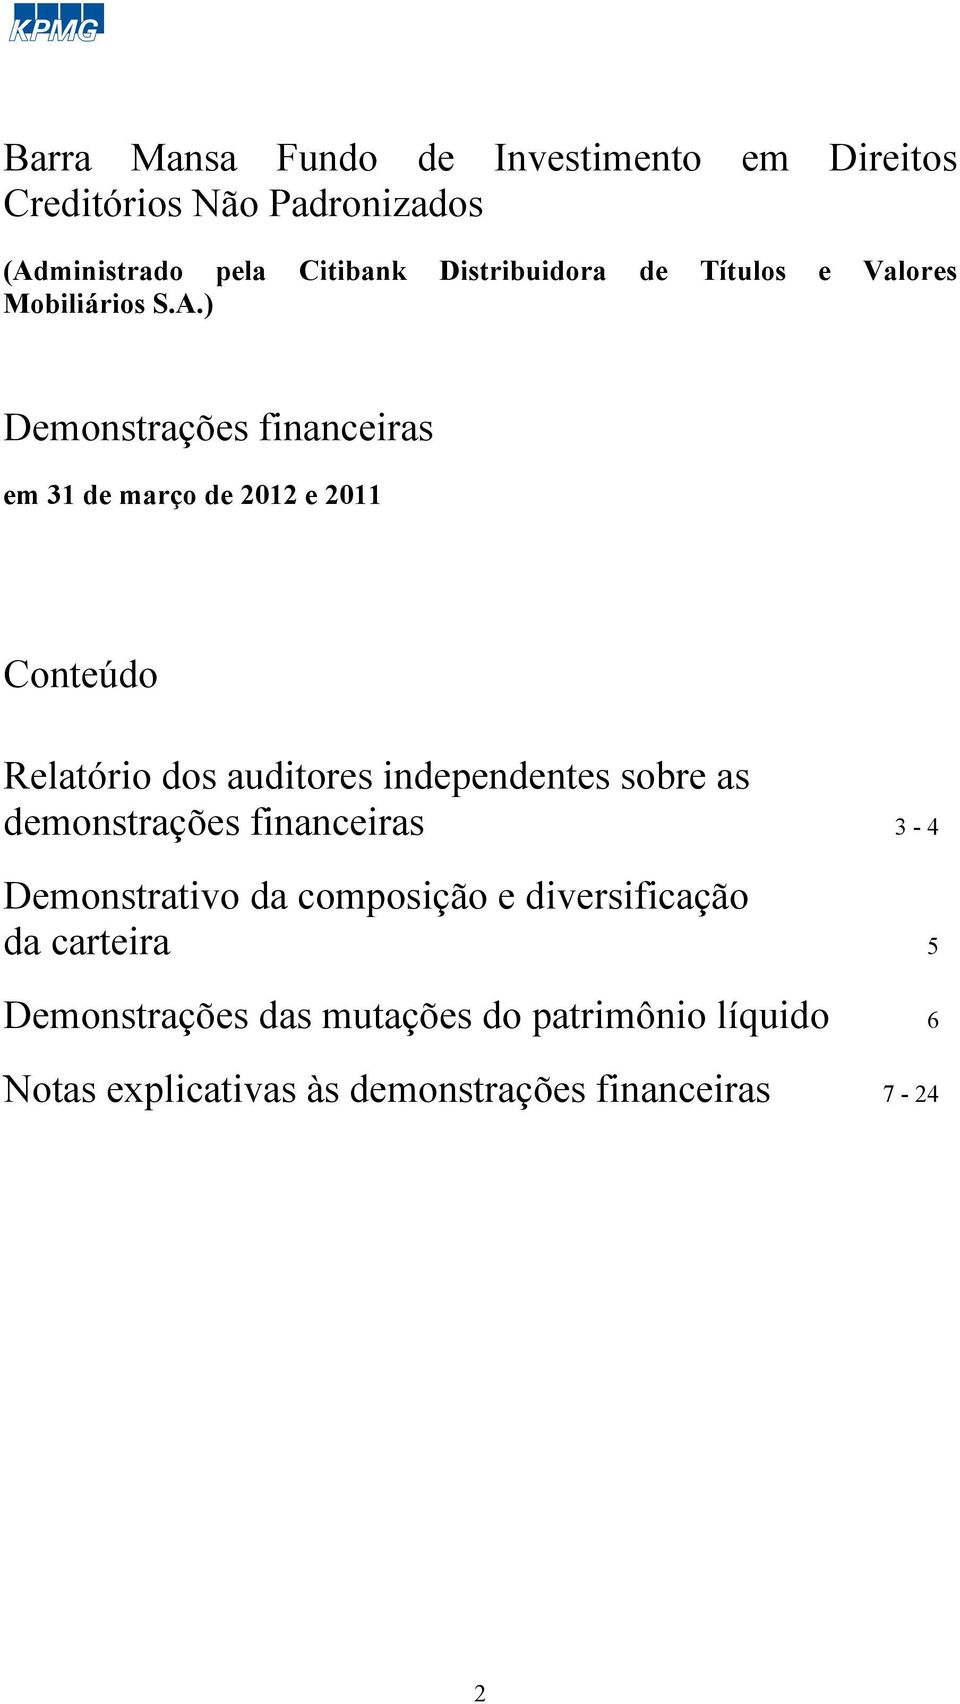 auditores independentes sobre as demonstrações financeiras 3-4 Demonstrativo da